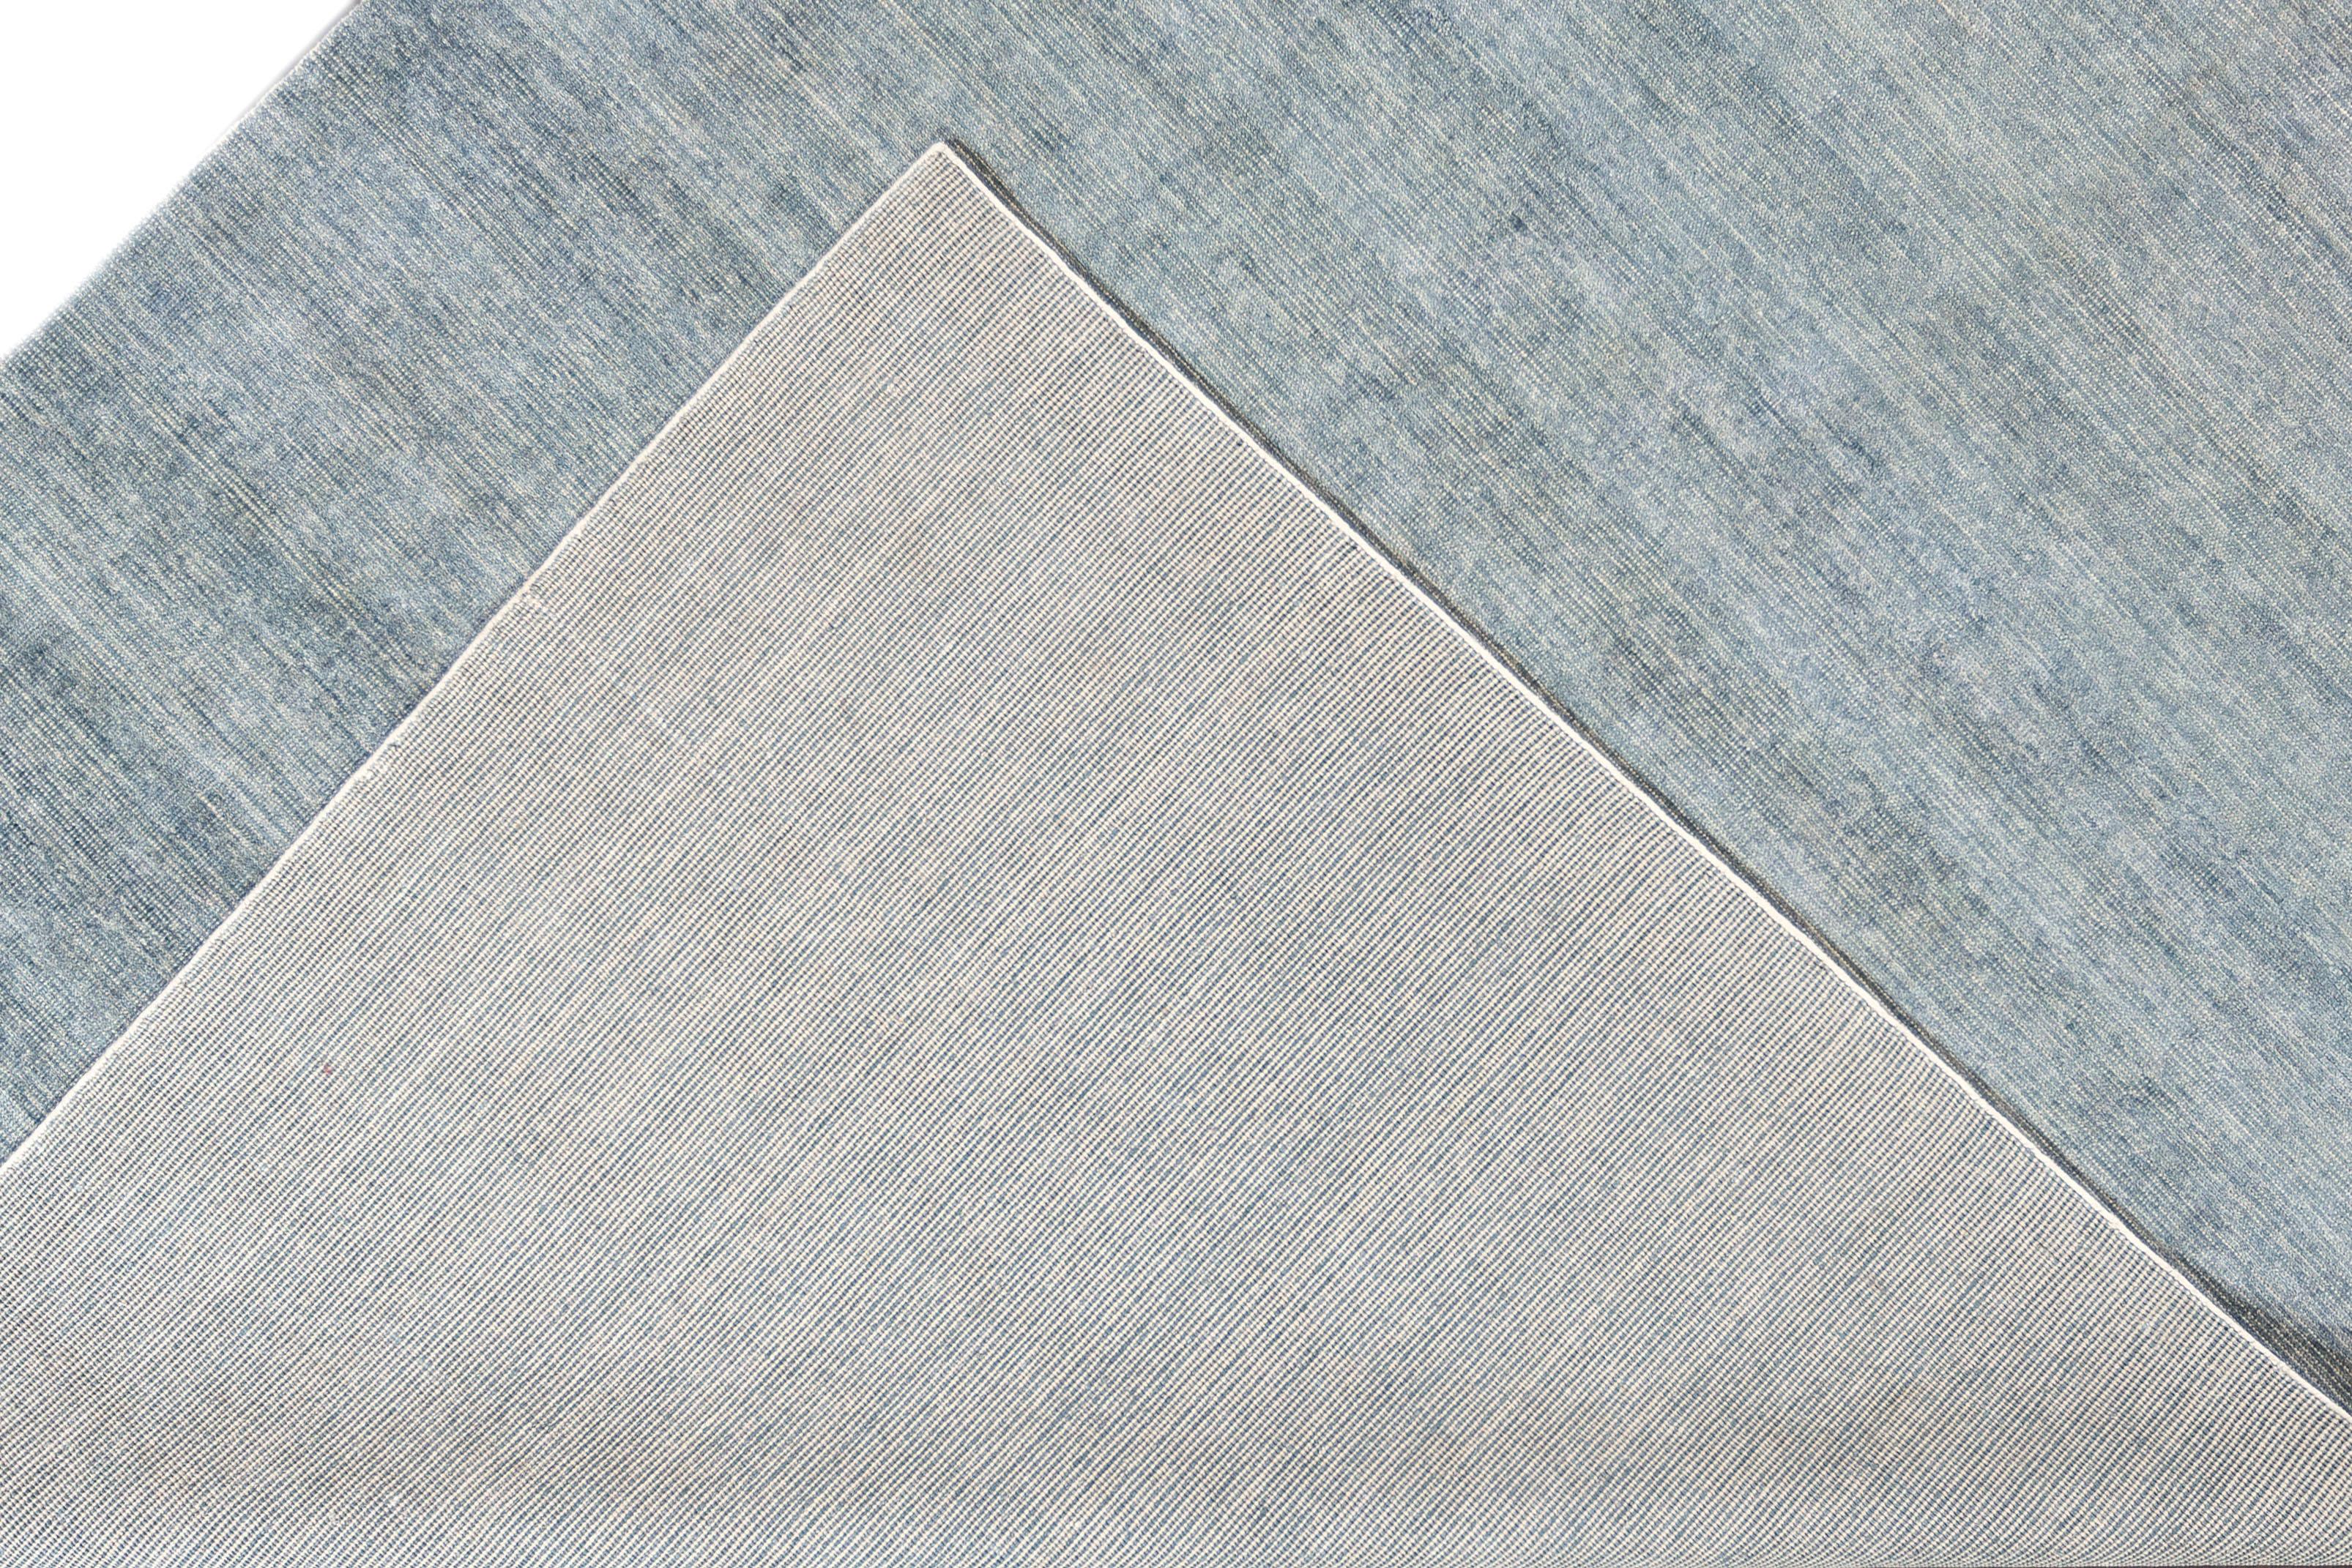 Apadana Magnifique tapis bohème indien moderne en bambou et soie, fait à la main, avec un champ bleu. Cette collection bohème présente un motif solide sur toute sa surface.

Ce tapis mesure 10'0